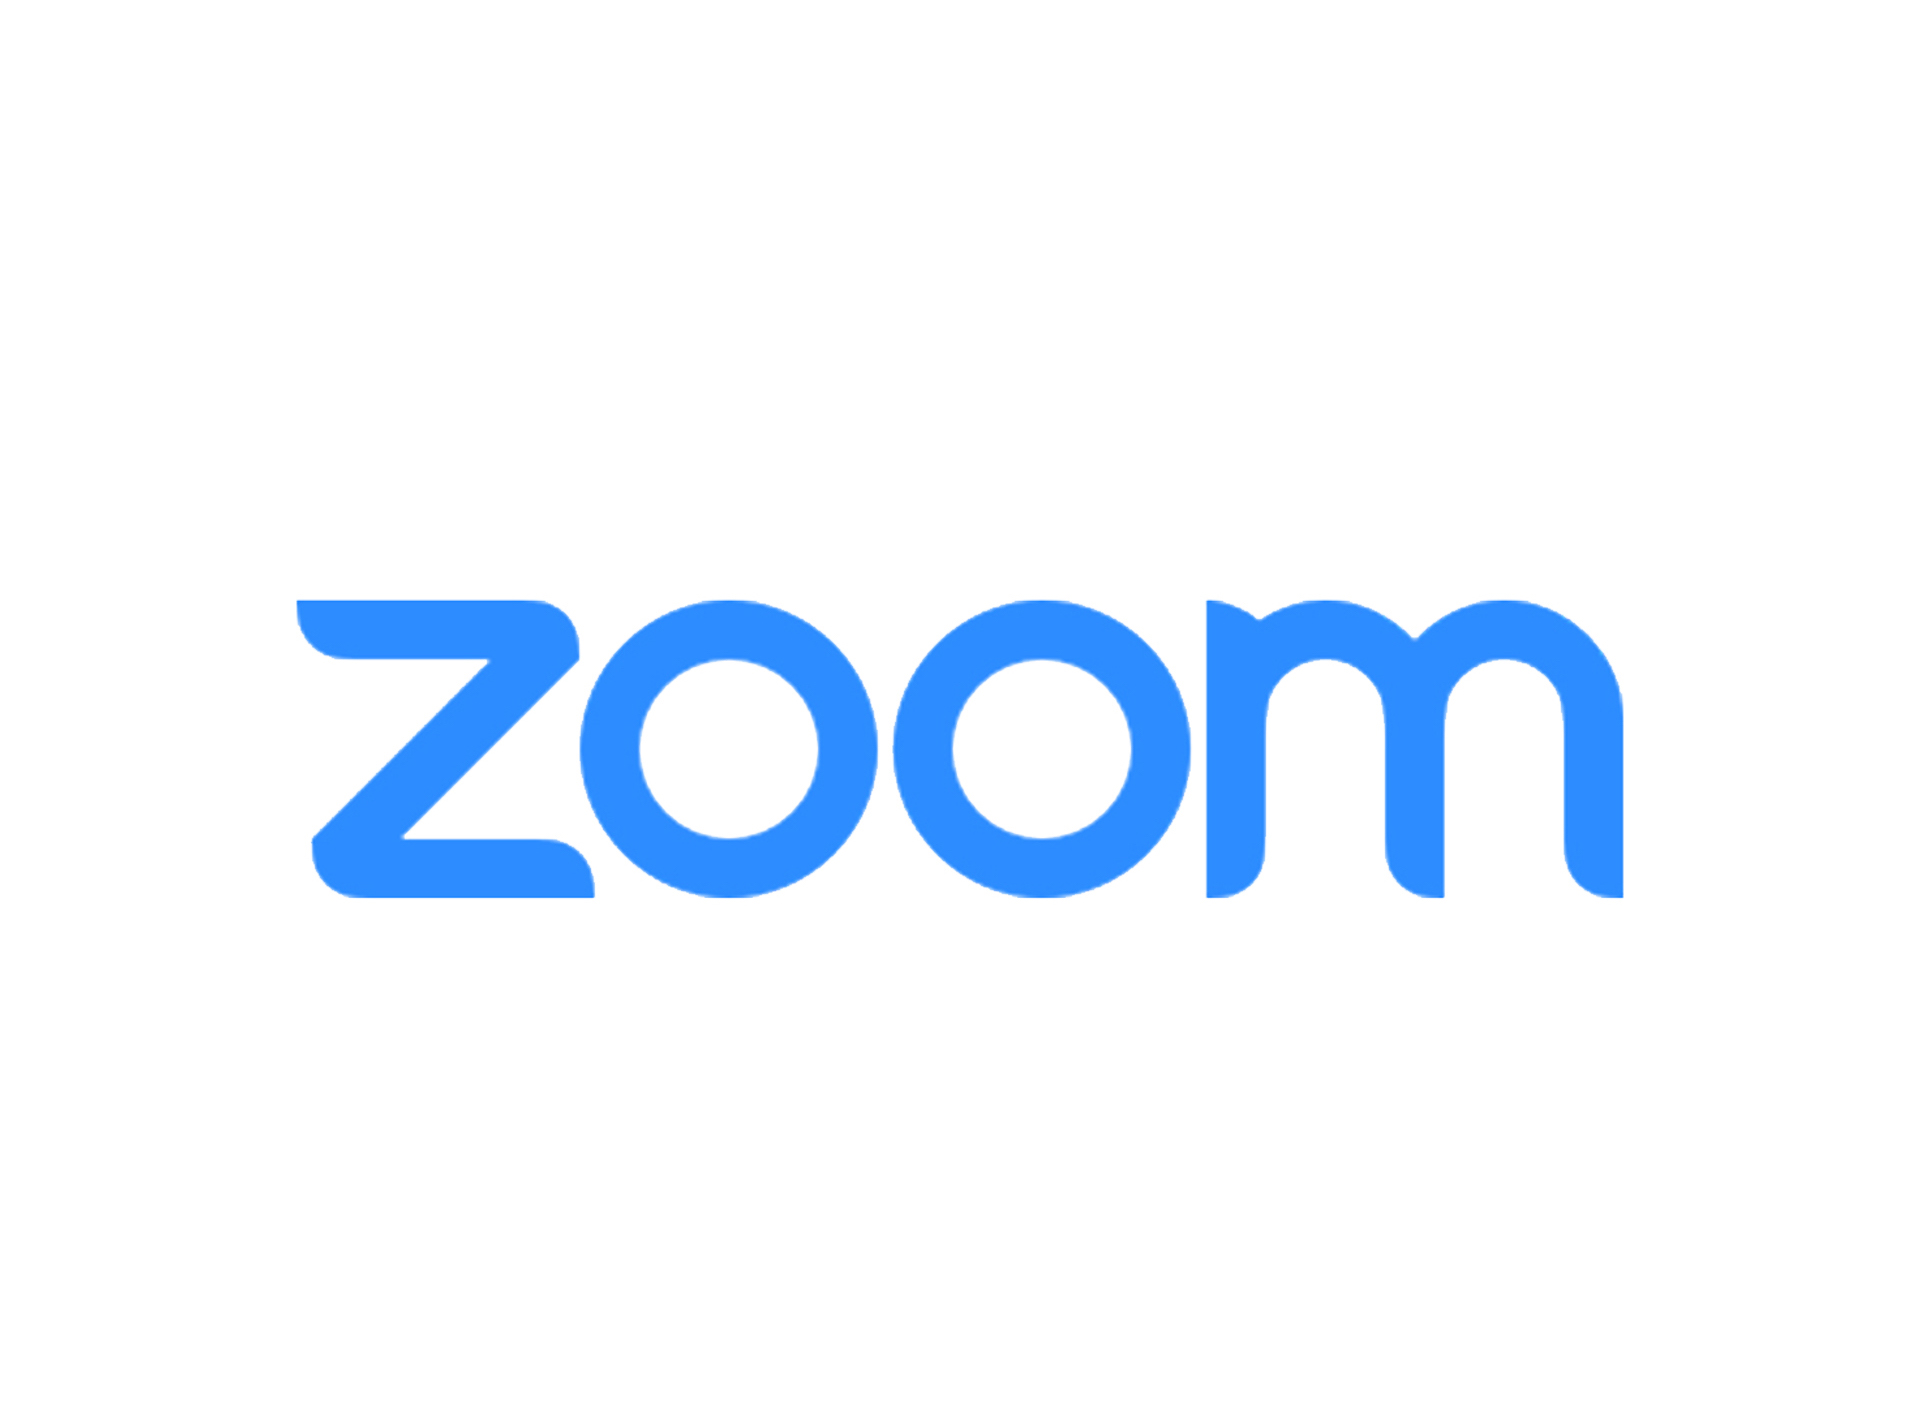 zoom resized logo